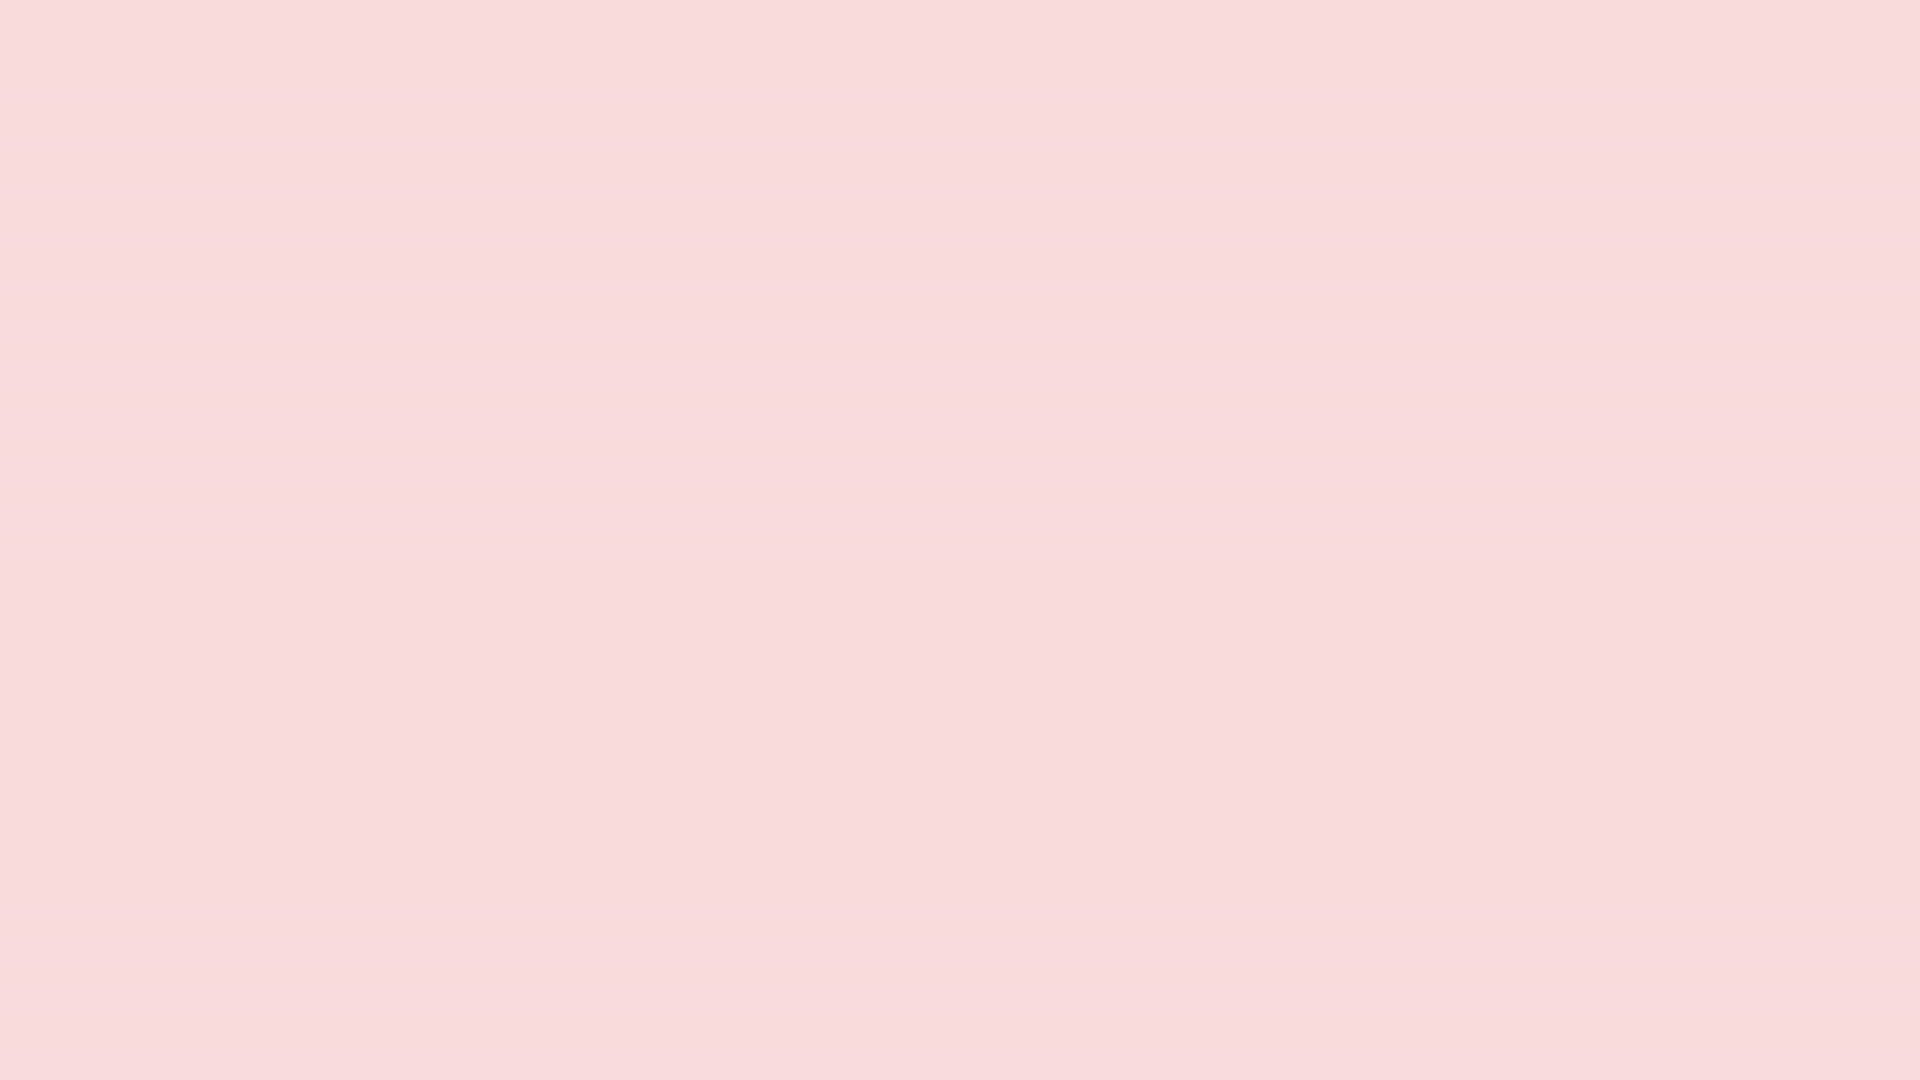 高清动态壁纸 粉红色无字纯色高清动态壁纸 Mac下载